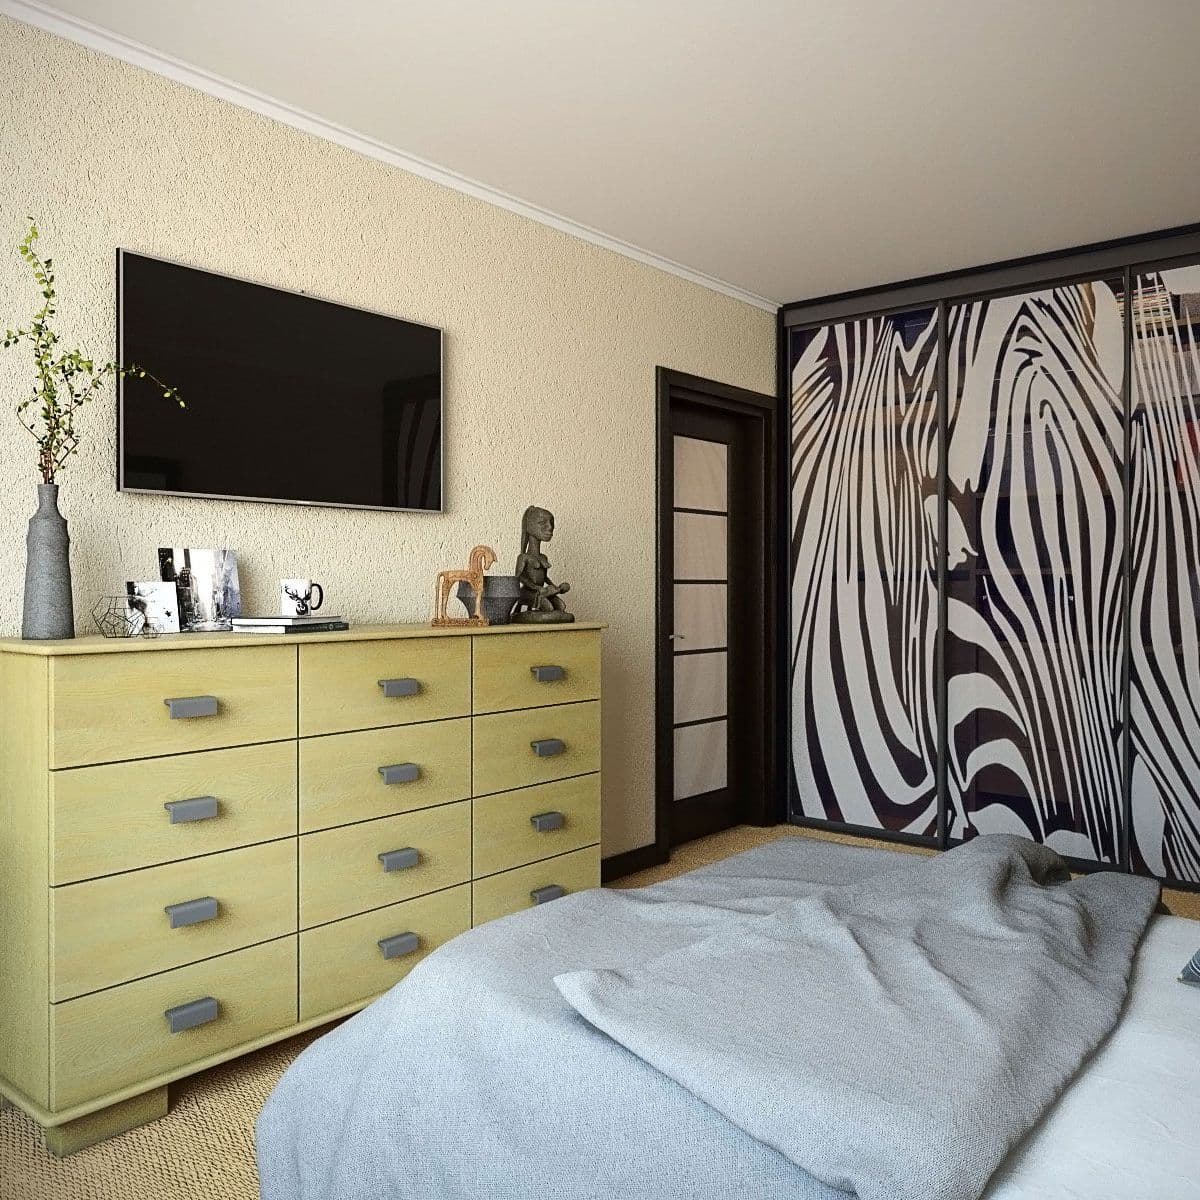 Современный интерьер спальни в бежевом цвете с большим комодом, шкафом-купе, декоративной штукатуркой и ковролином